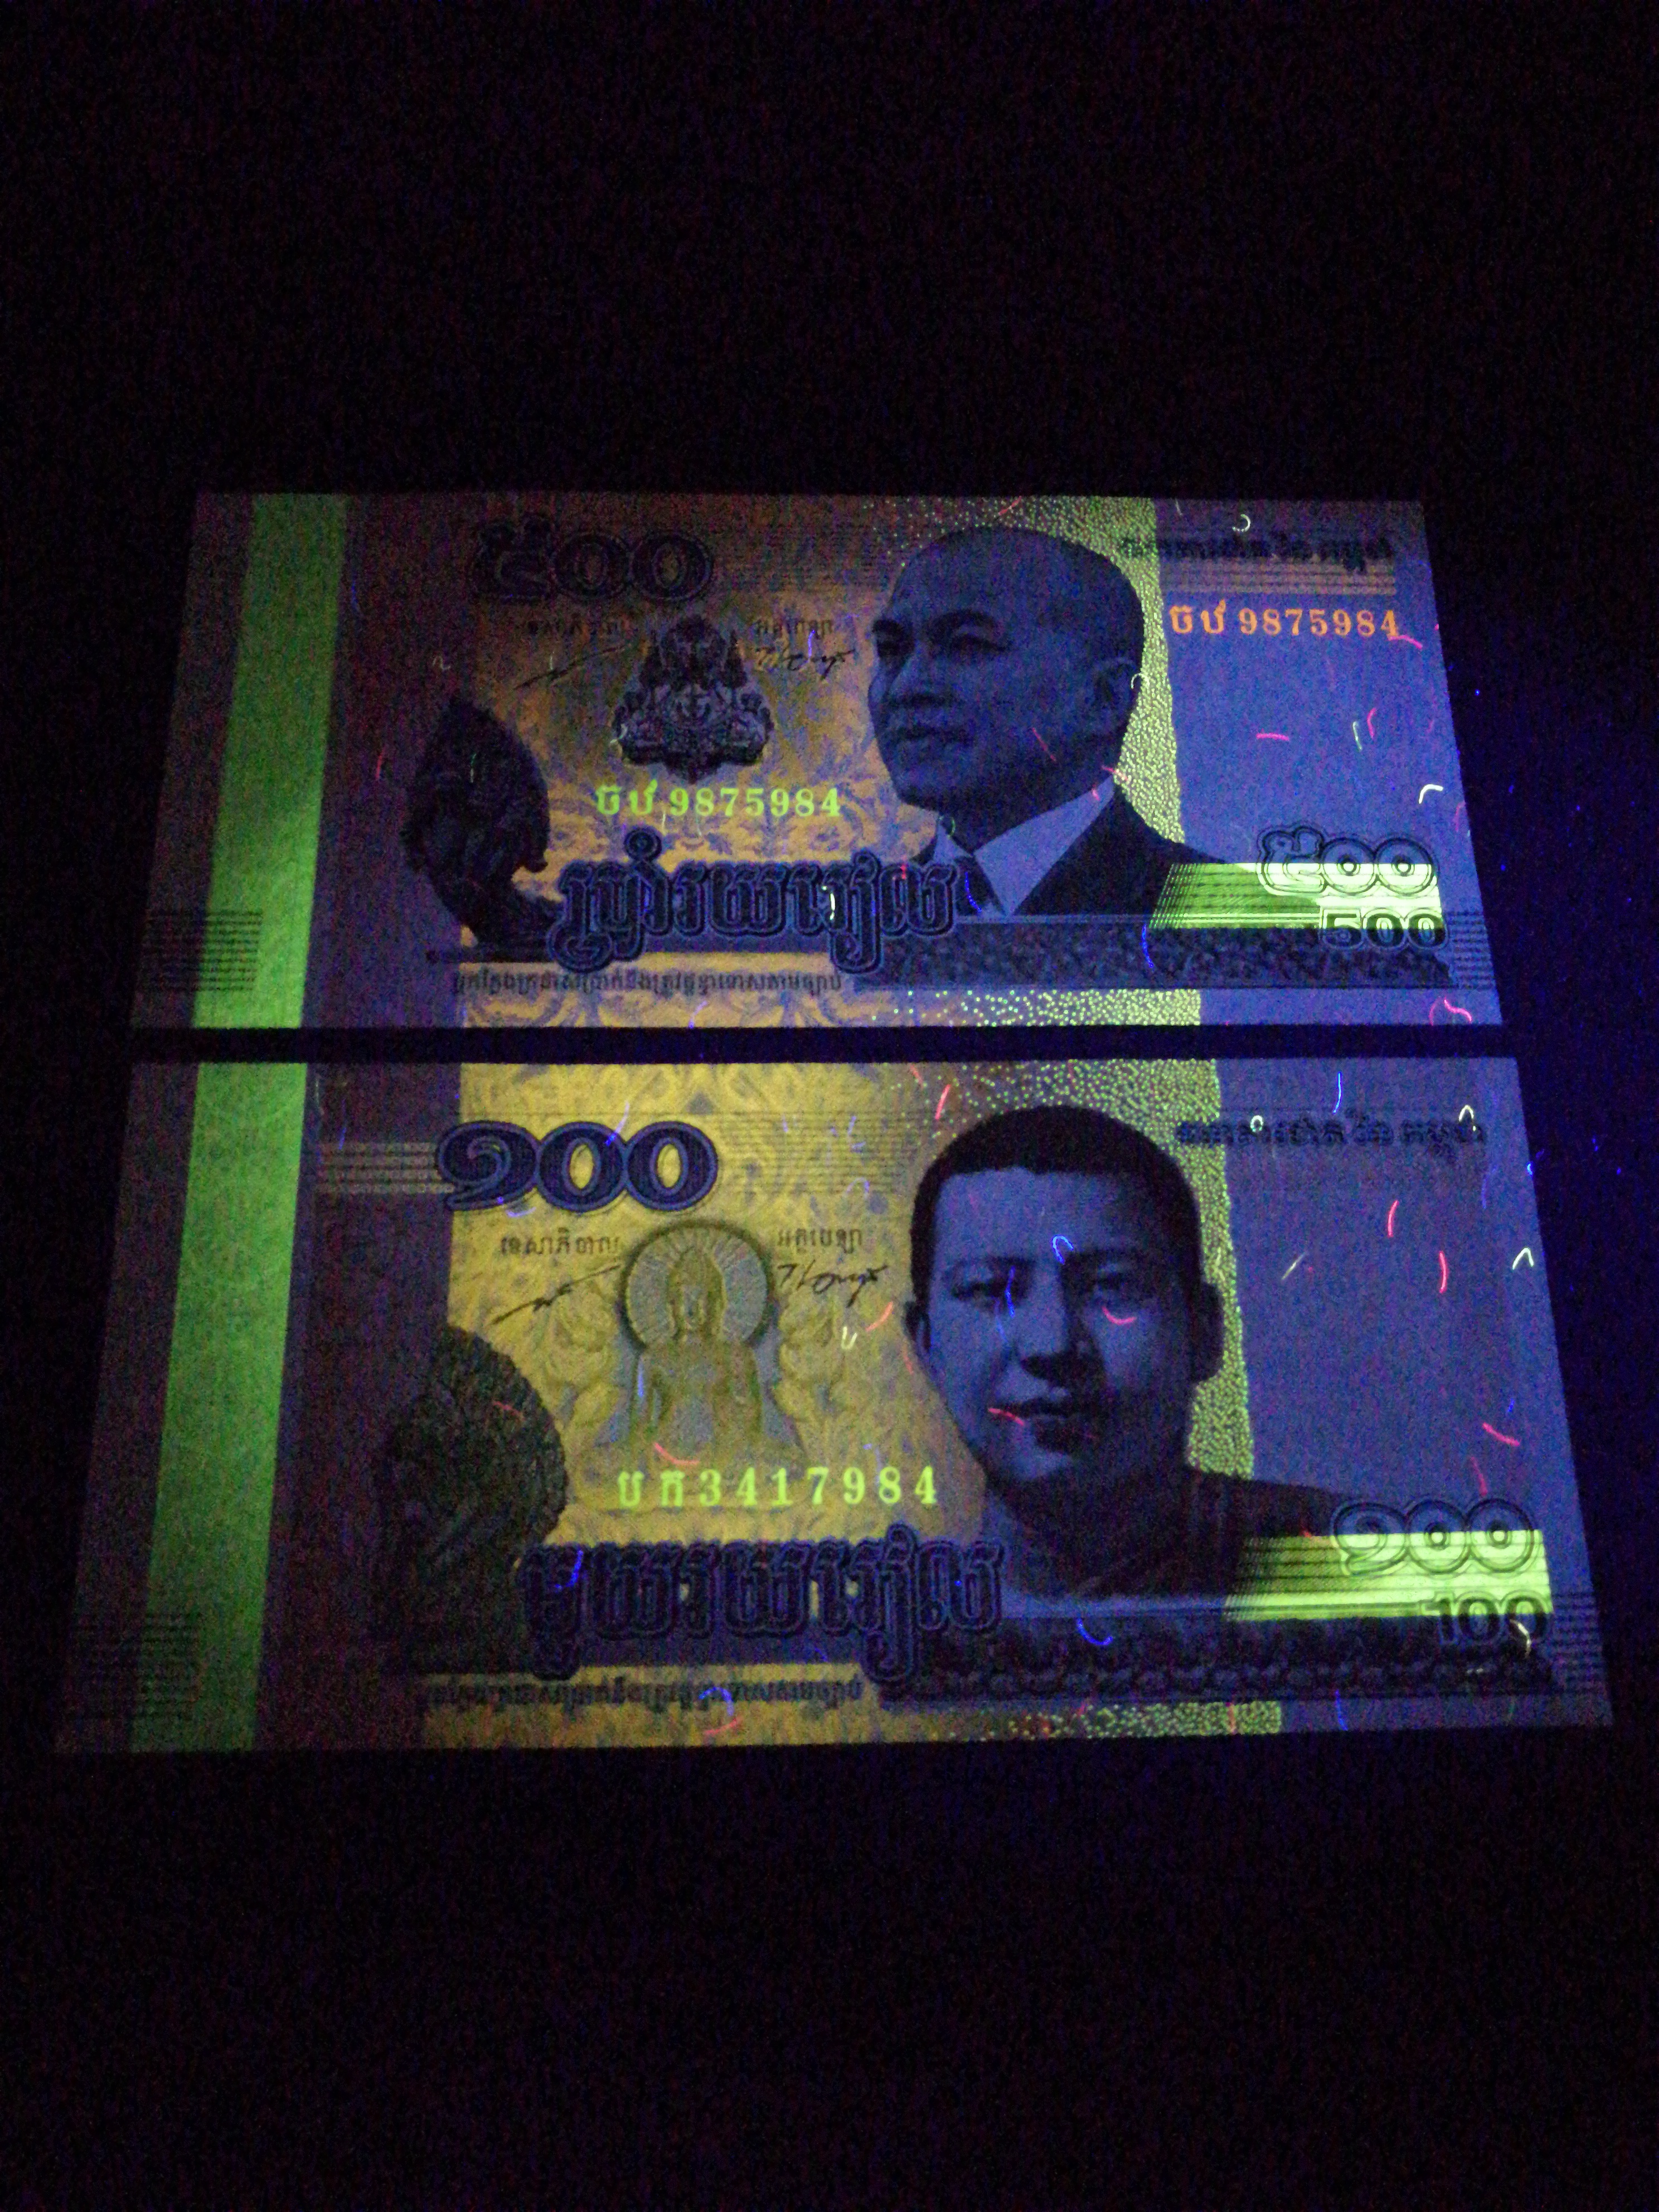 柬埔寨纸币,瑞尔二张,包真,附简介,绝品,荧光效